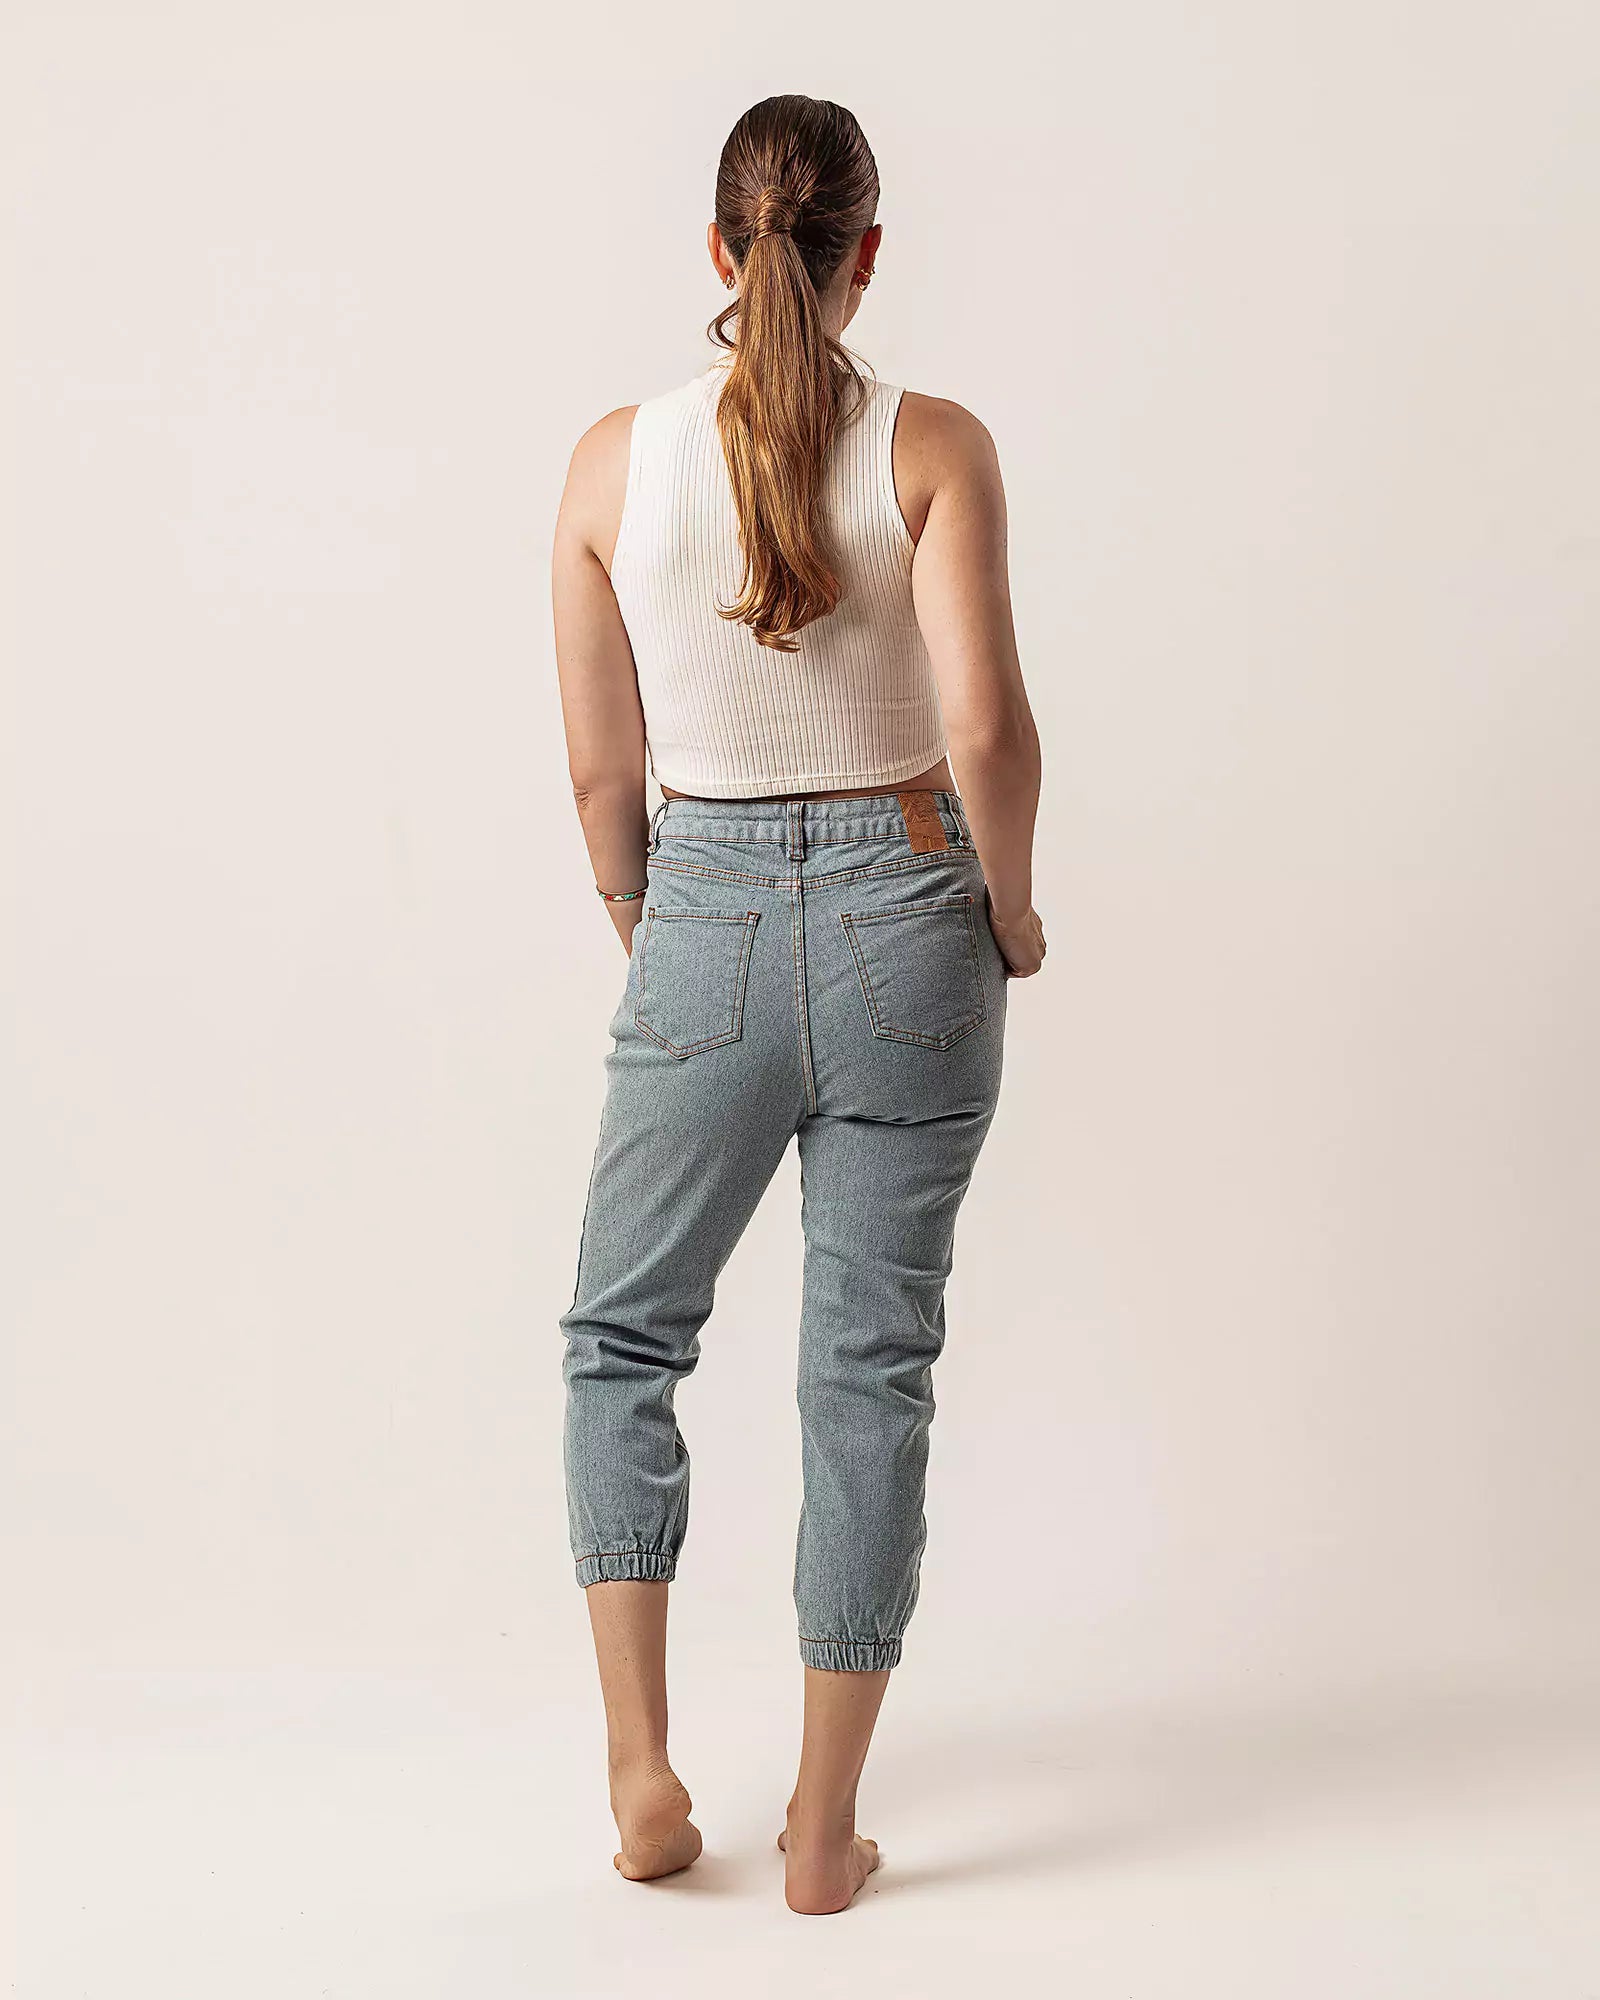 Calça Jogger Jeans Azul Claro Eco Denim™. Compre online moda sustentável e atemporal na Minimadeia. Roupas femininas estilosas, básicas e sustentáveis. Foto produto 05